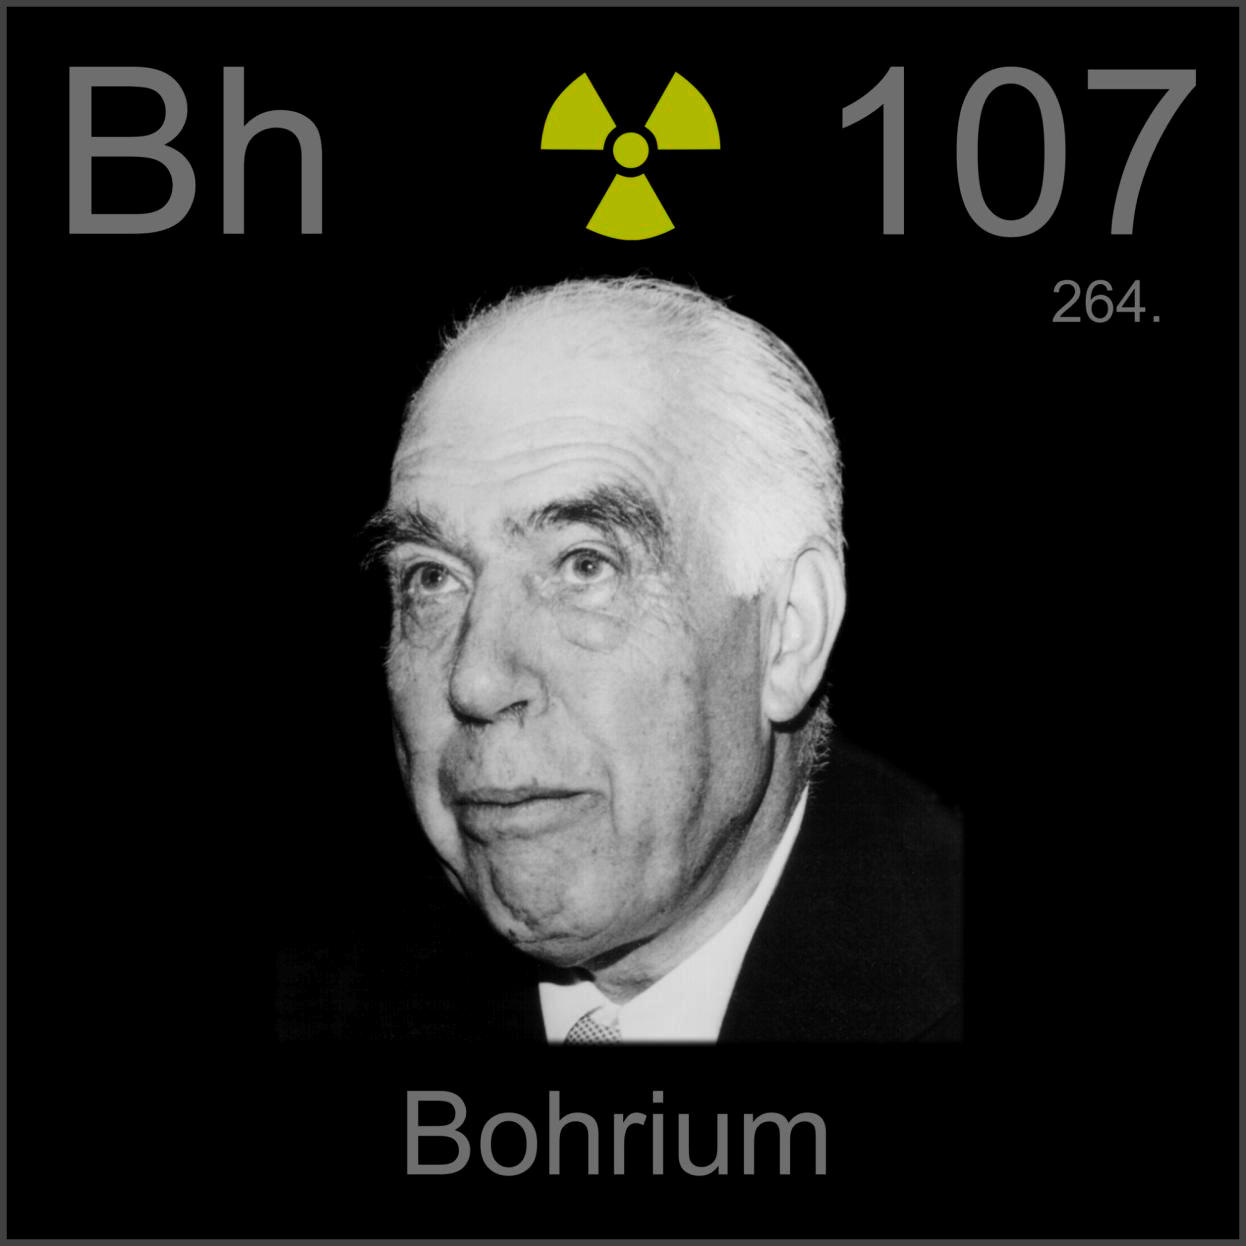 Bohrium Poster sample